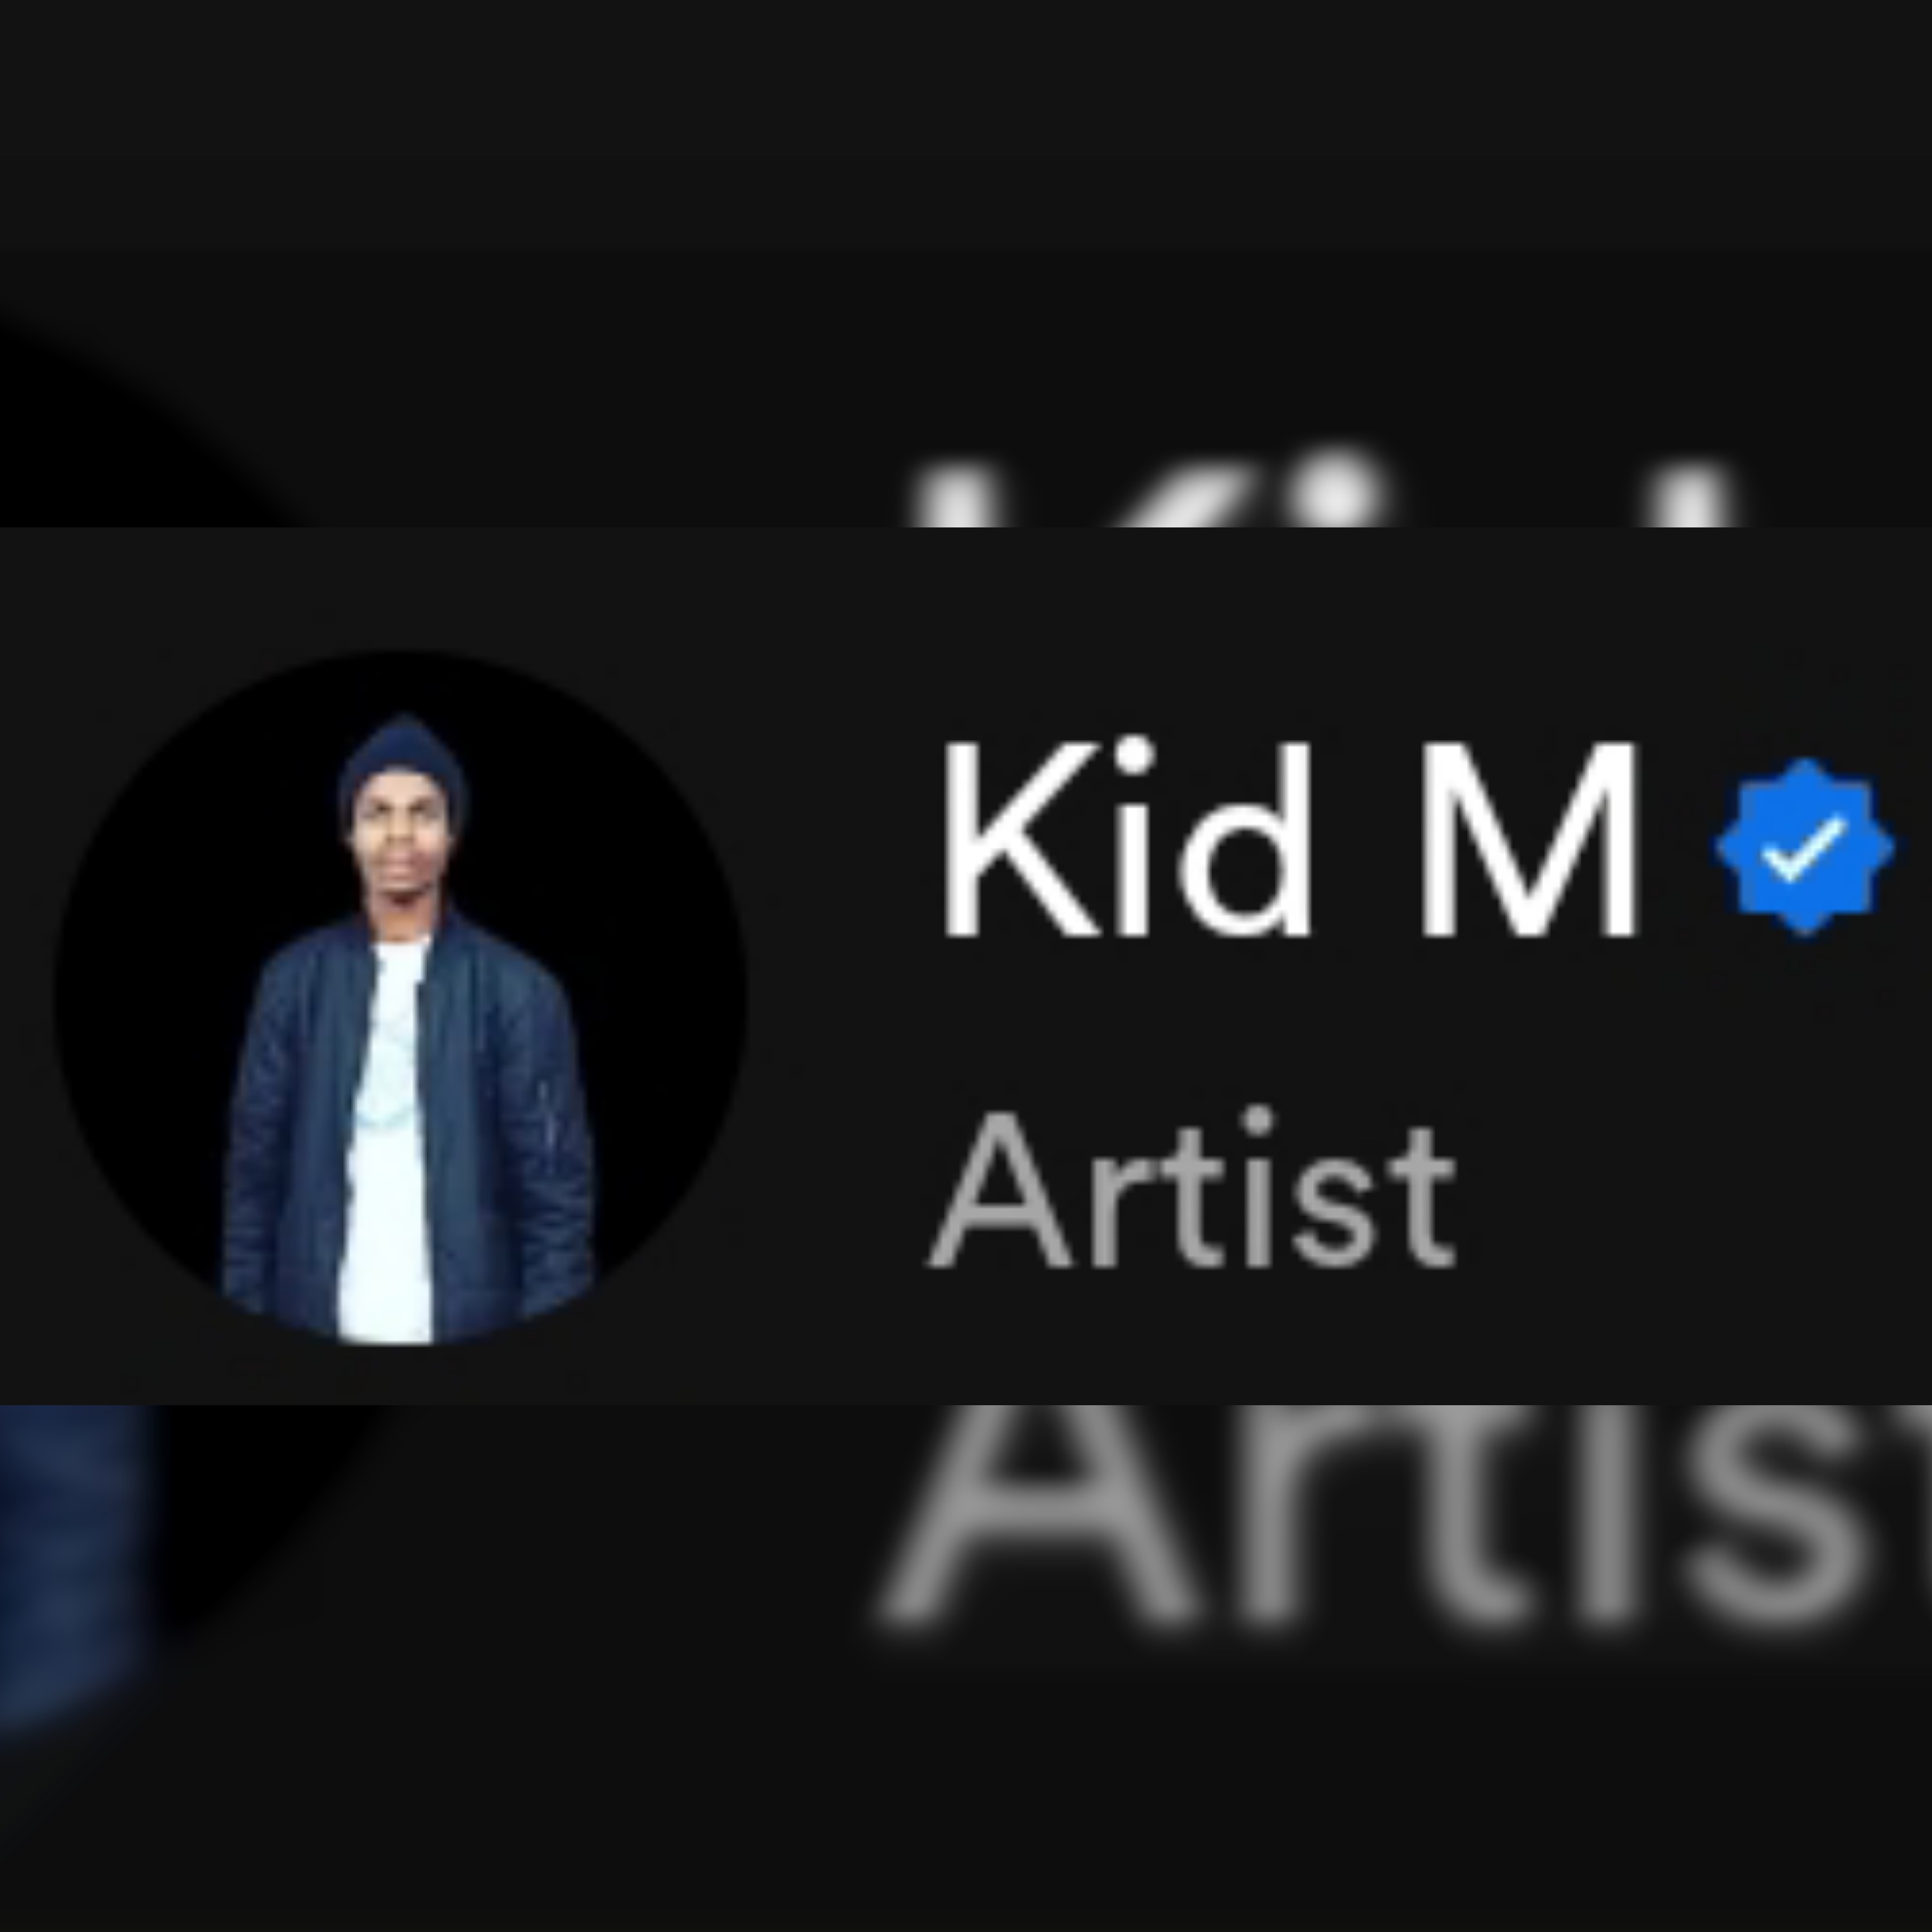 Kid M